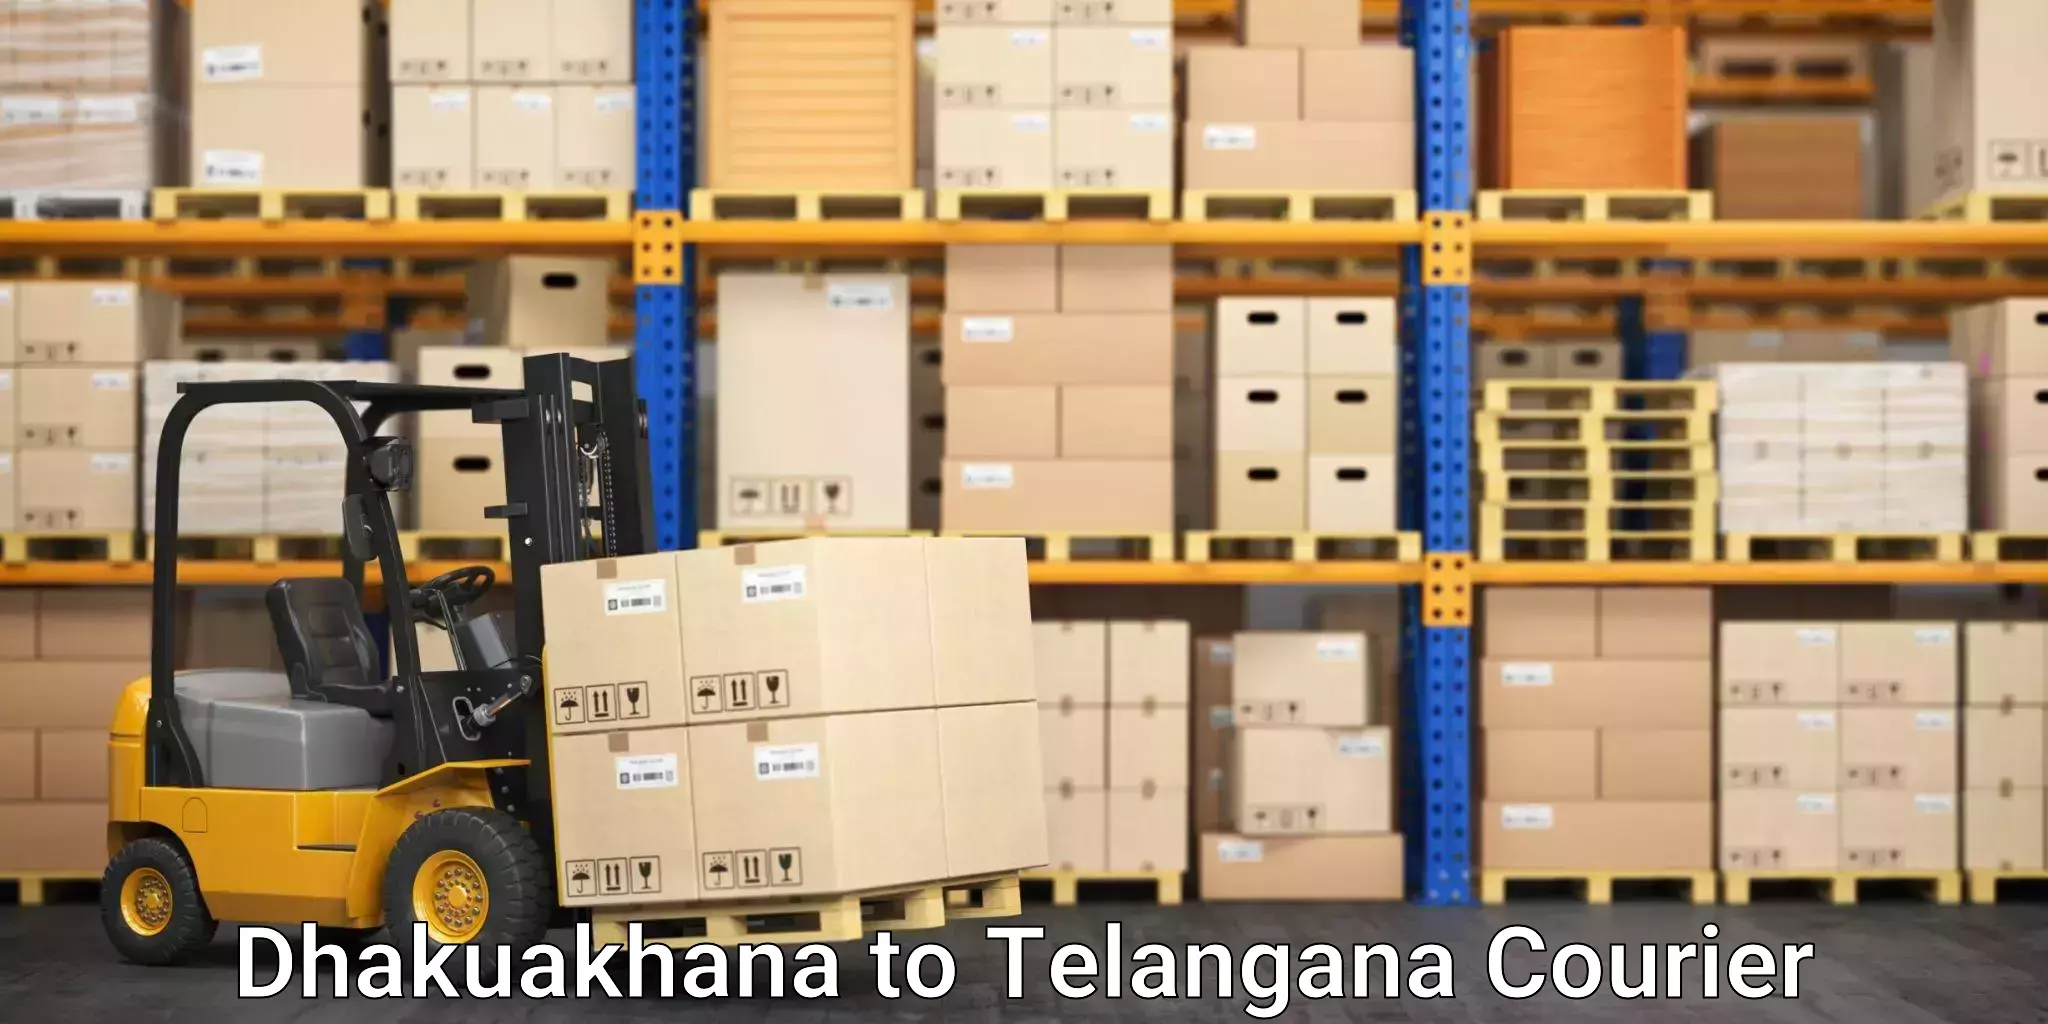 Specialized shipment handling Dhakuakhana to Telangana